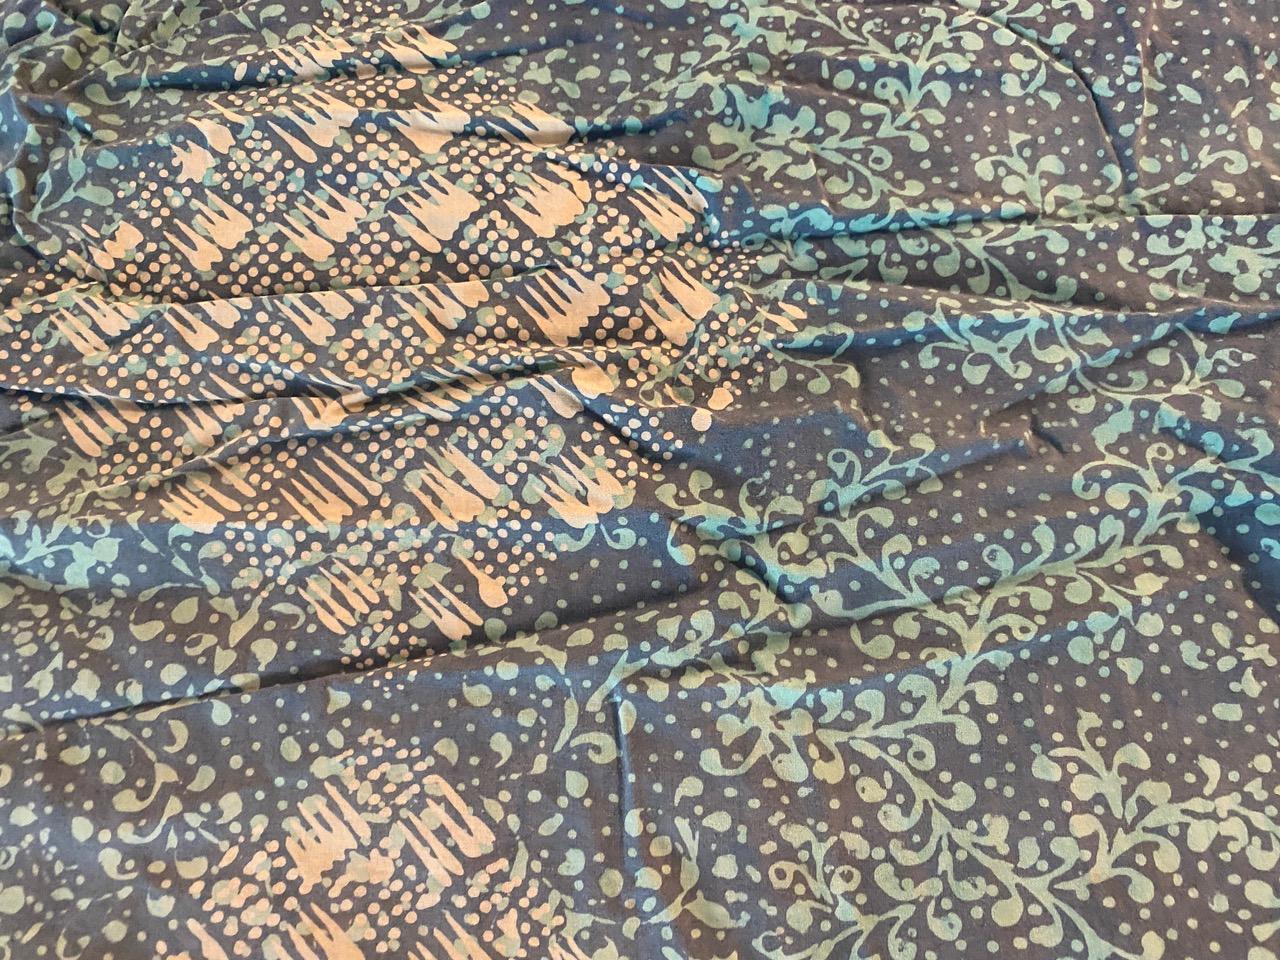 Schöner antiker Zeremonien-Sarong aus Bali. Es gibt so viele Verwendungsmöglichkeiten für diese weichen Baumwollbatiken. Batik ist eine indonesische Technik des Färbens mit Wachsresistenzen, die auf das gesamte Textil angewendet wird. Wir haben eine